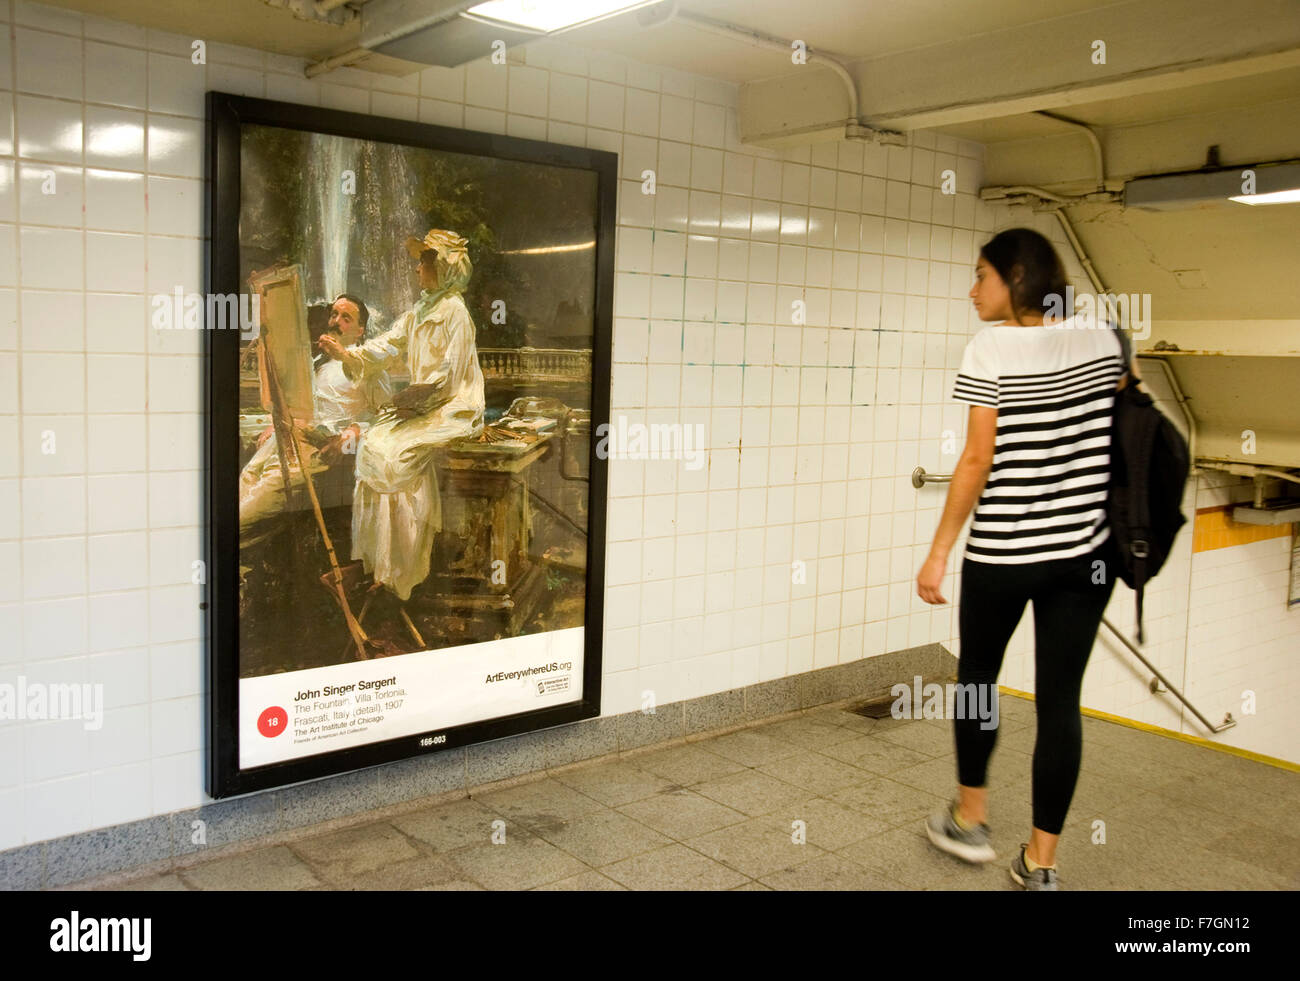 John Singer Sargent peinture reproduite sur panneau publicitaire à New York city subway dans le cadre du projet d'art partout. Banque D'Images